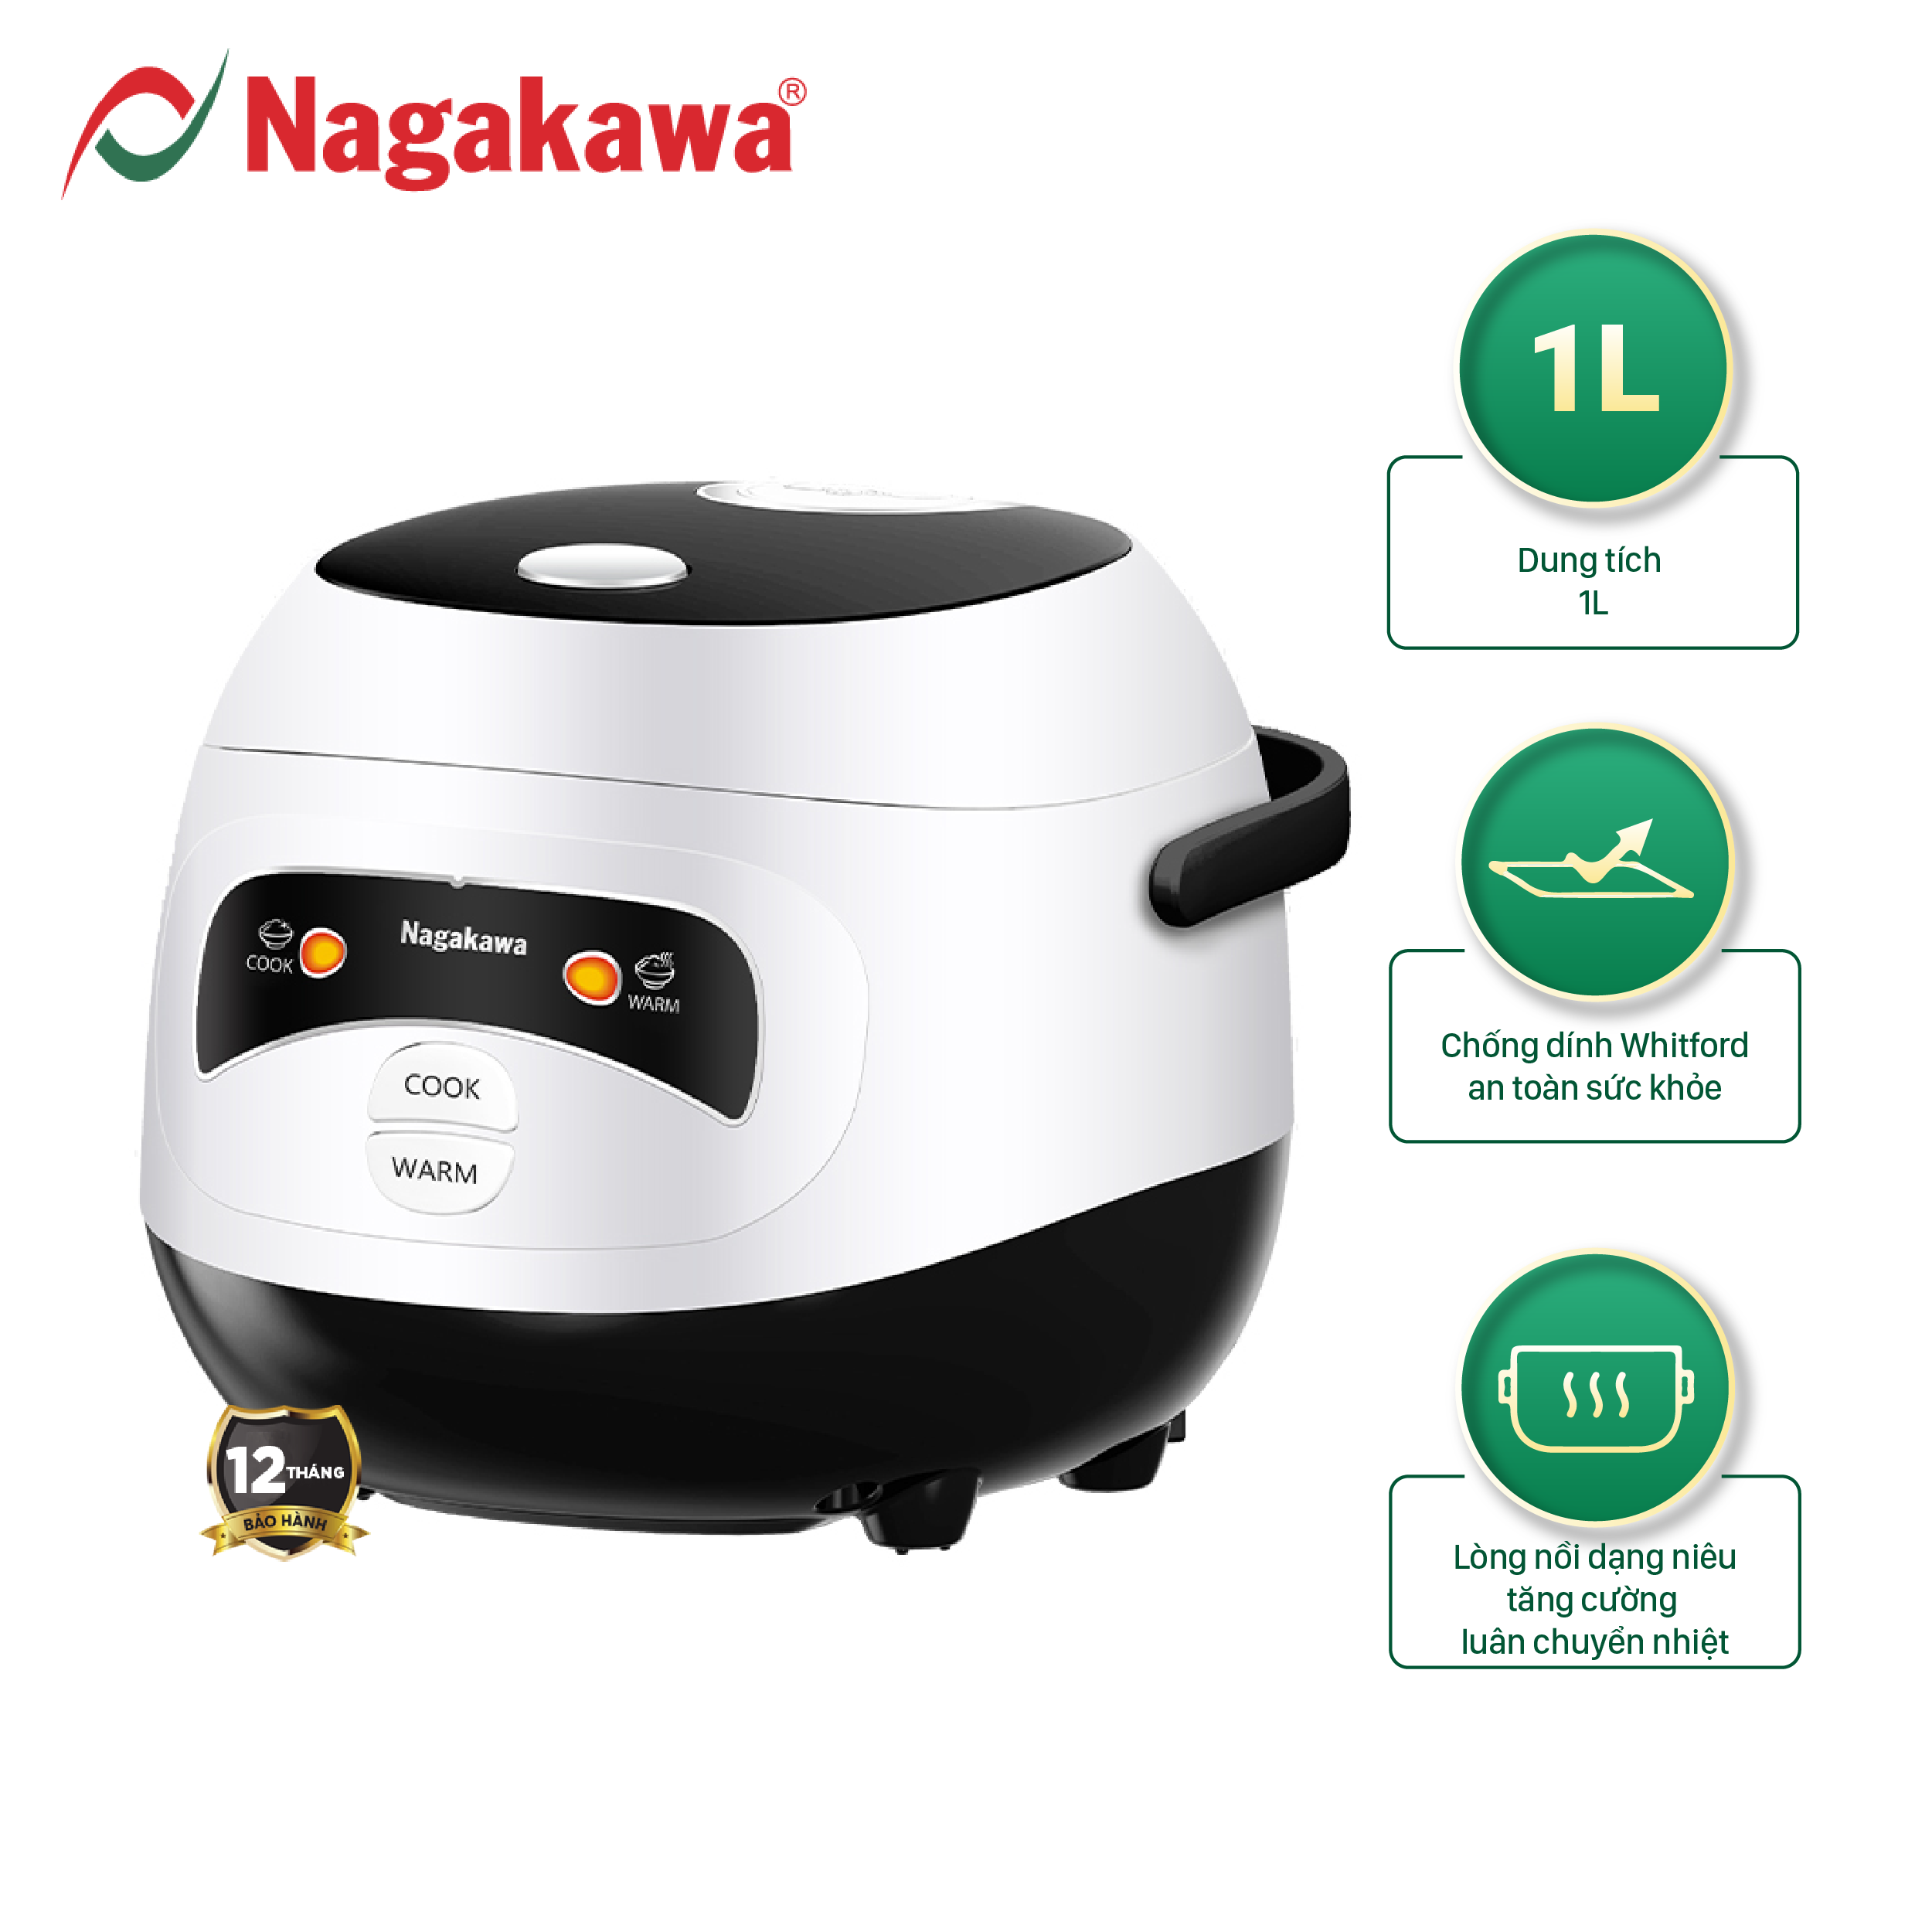 Nồi cơm điện mini Nagakawa NAG0134 dung tích 1L công suất 400W lòng niêu dày dặn phủ chống dính an toàn cho sức khỏe 2 chế độ nấu bảo hành 12 tháng